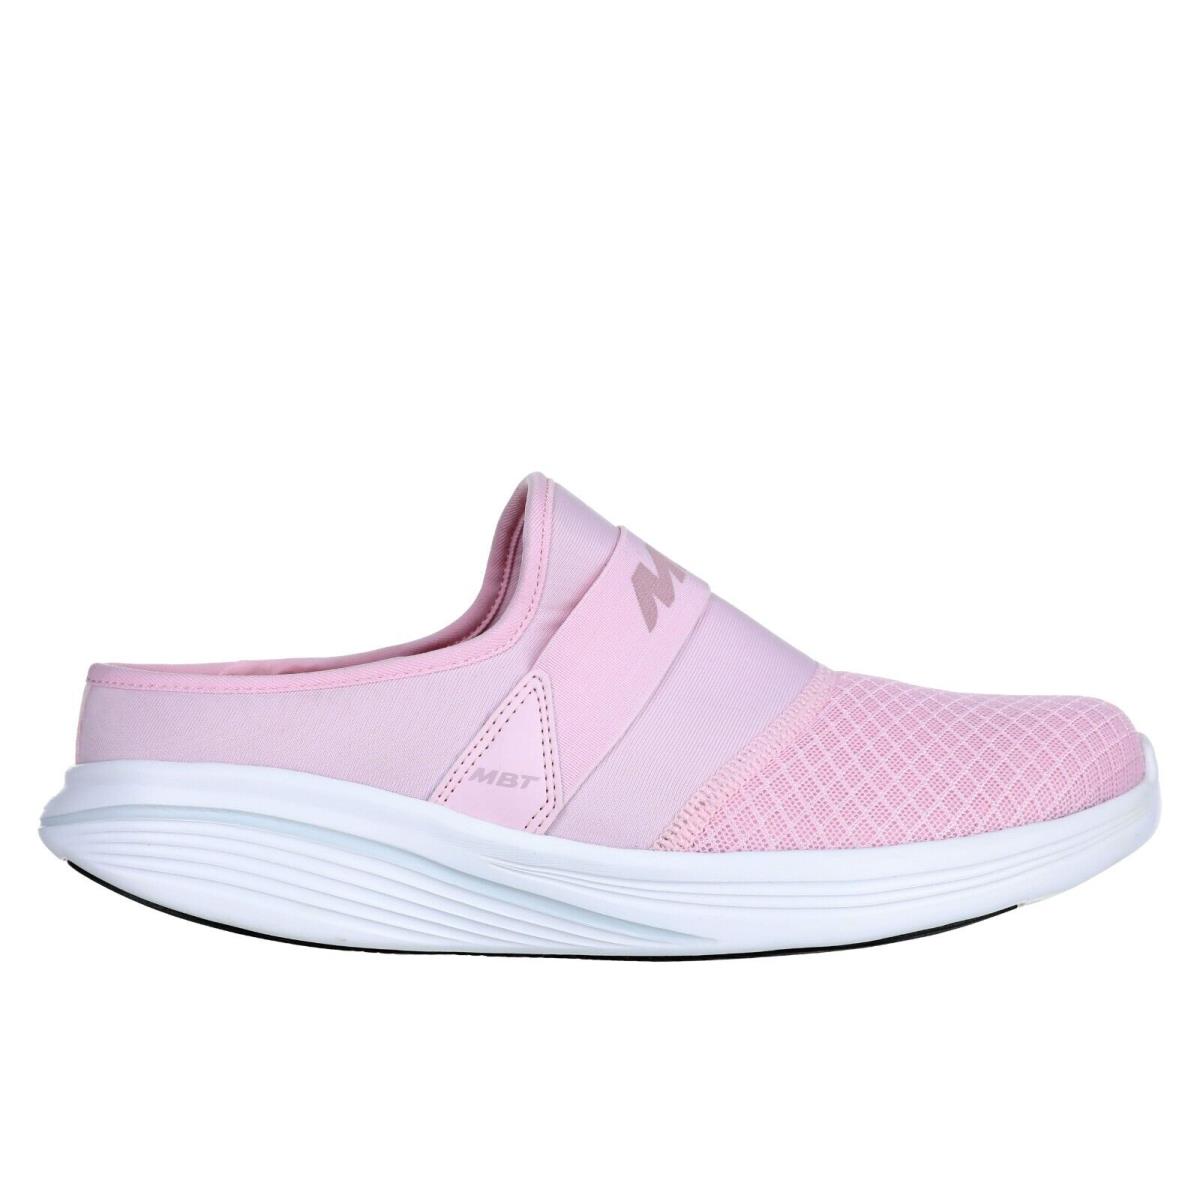 Mbt Women Taka Clog Sporty Walker Slip-on/house Slipper Soft 5 Colors Cradle Pink